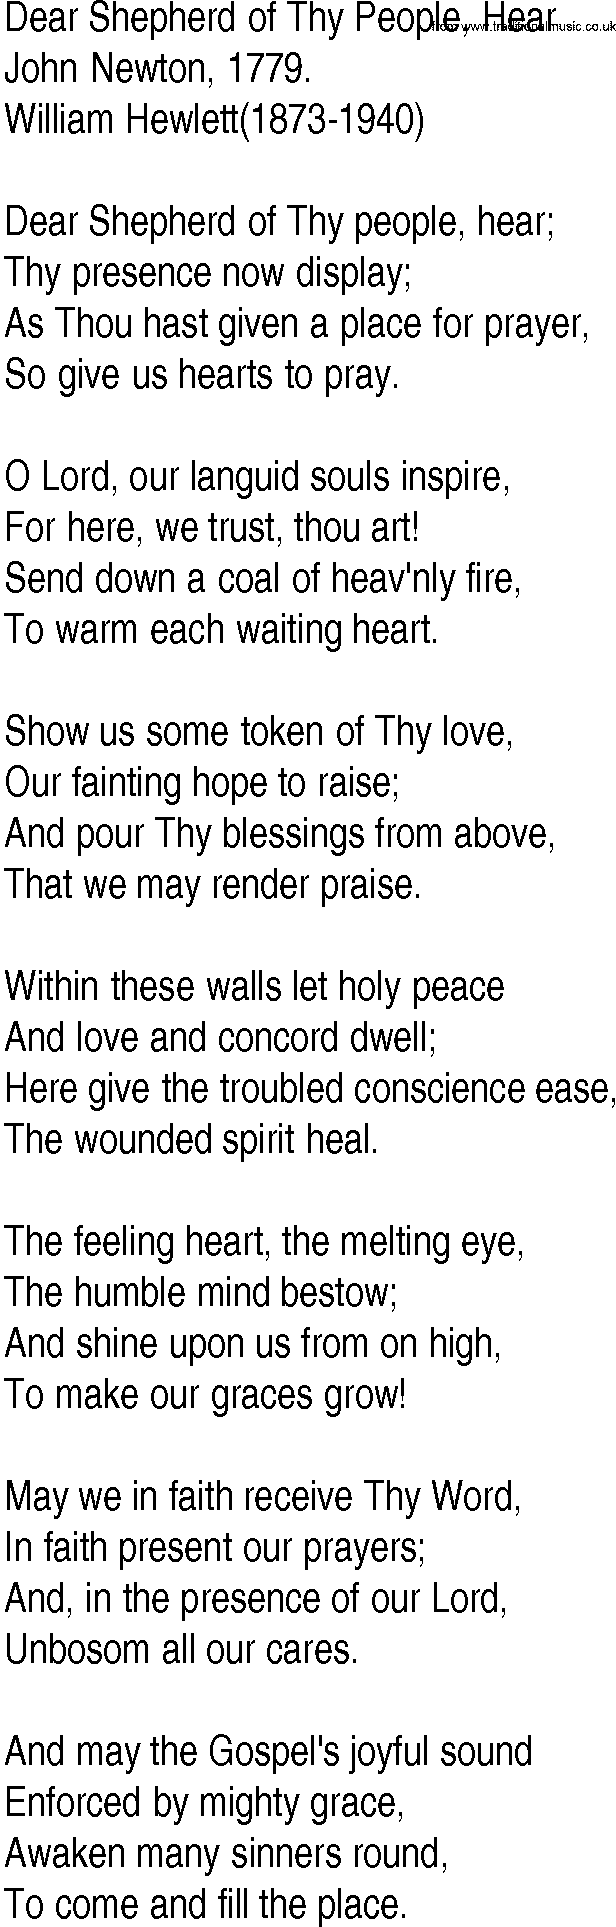 Hymn and Gospel Song: Dear Shepherd of Thy People, Hear by John Newton lyrics